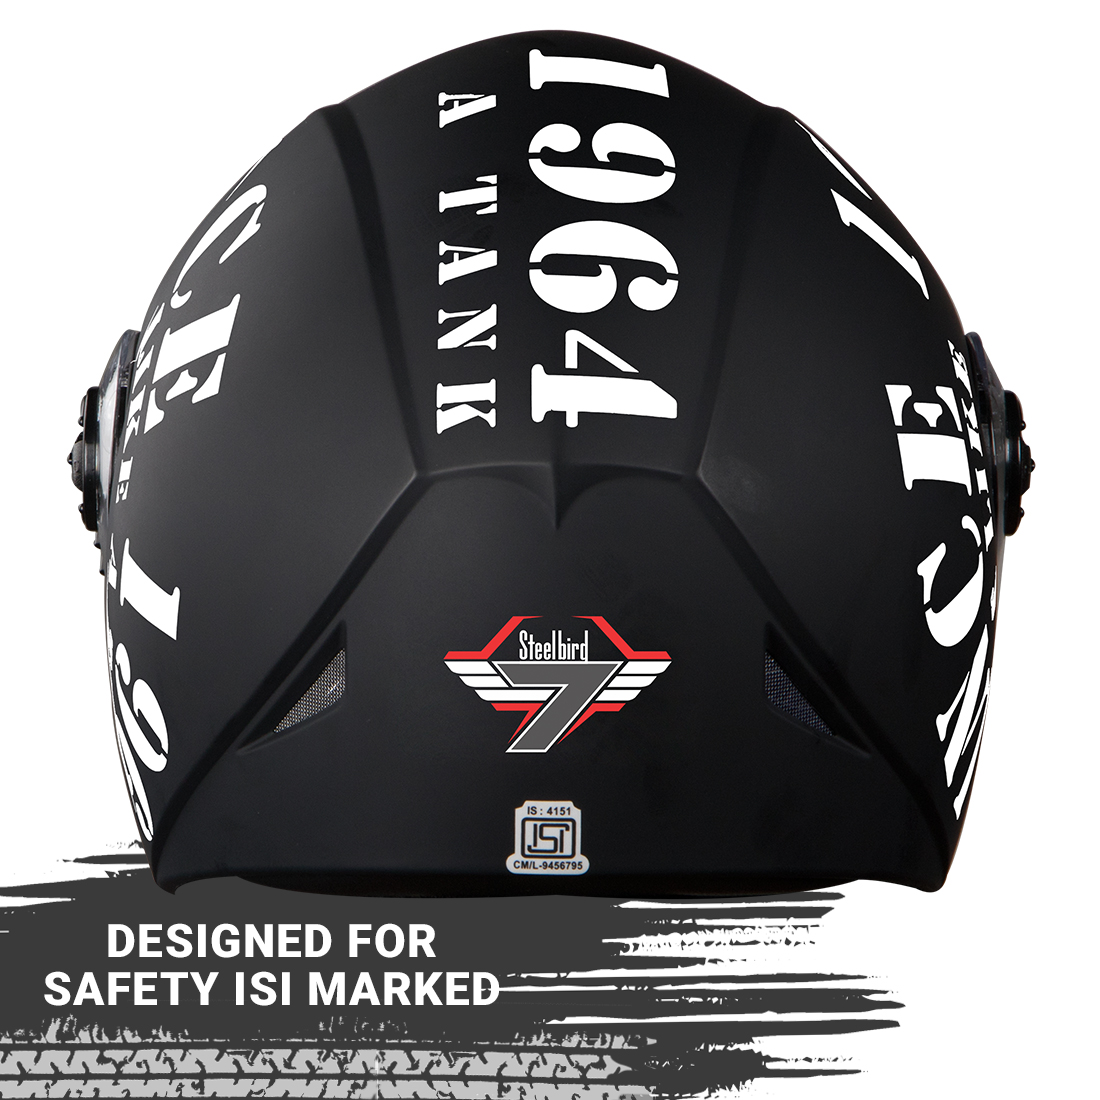 Steelbird SB-45 7Wings Award Tank Flip Up Graphic Helmet (Matt Black White With Chrome Gold Visor)